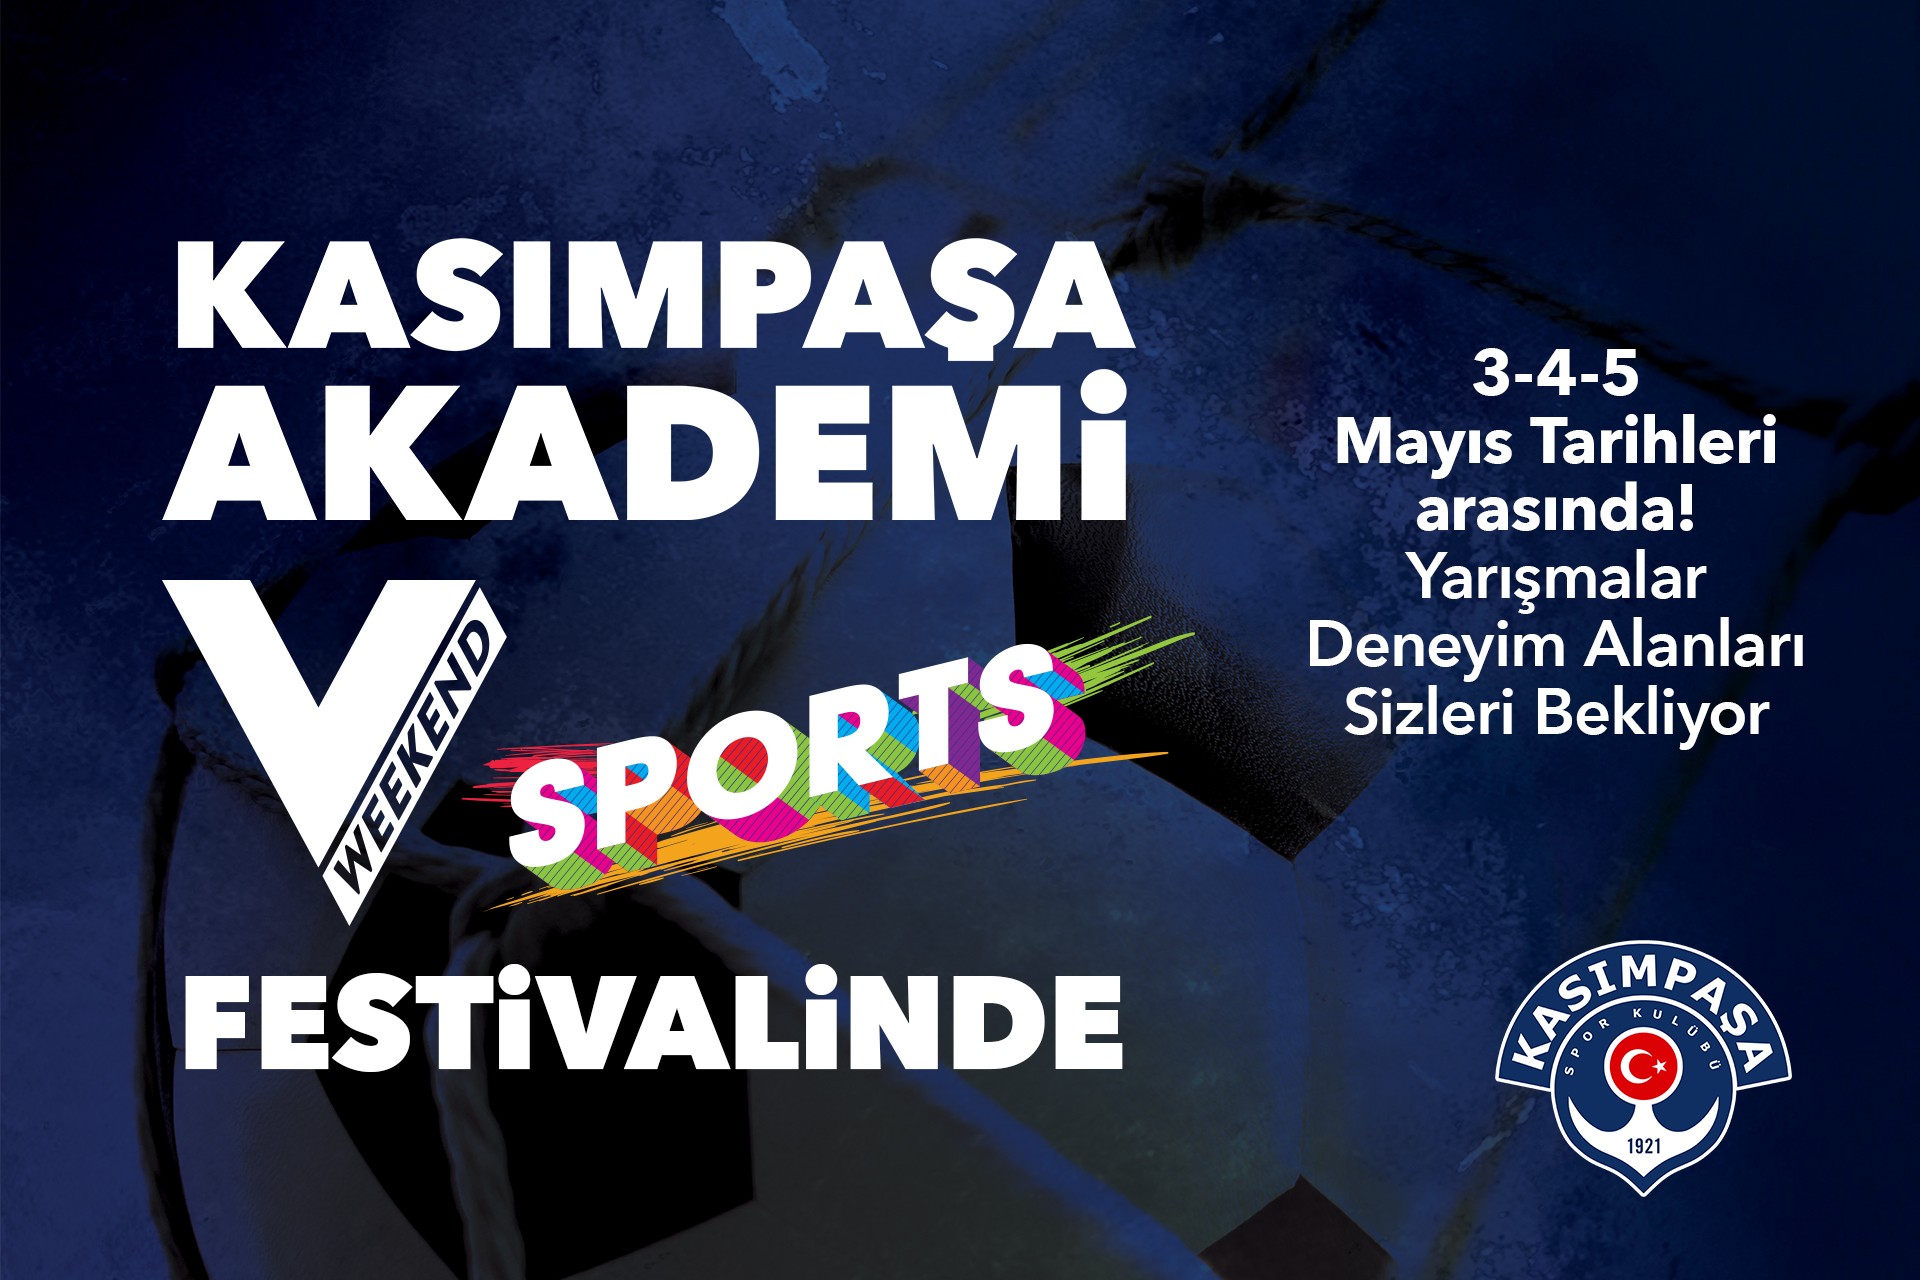 Kasımpaşa Akademi, Weekend Sports Festivali’ne katılıyor